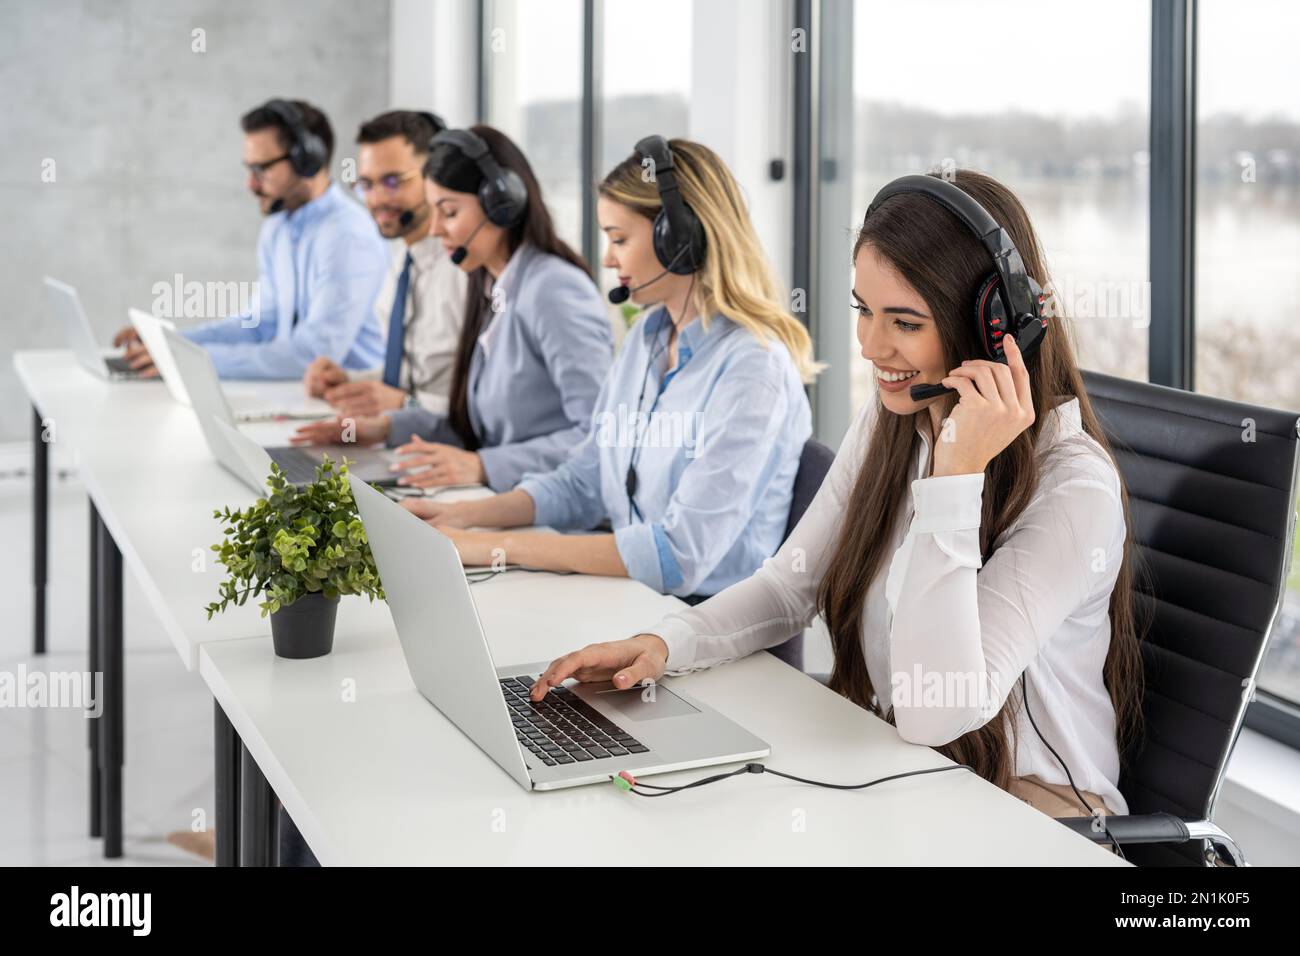 Gruppe von freundlichen, professionellen Kundendienstmitarbeitern, die mit Kunden interagieren, während sie Online-Chats im Callcenter-Büro führen. Stockfoto